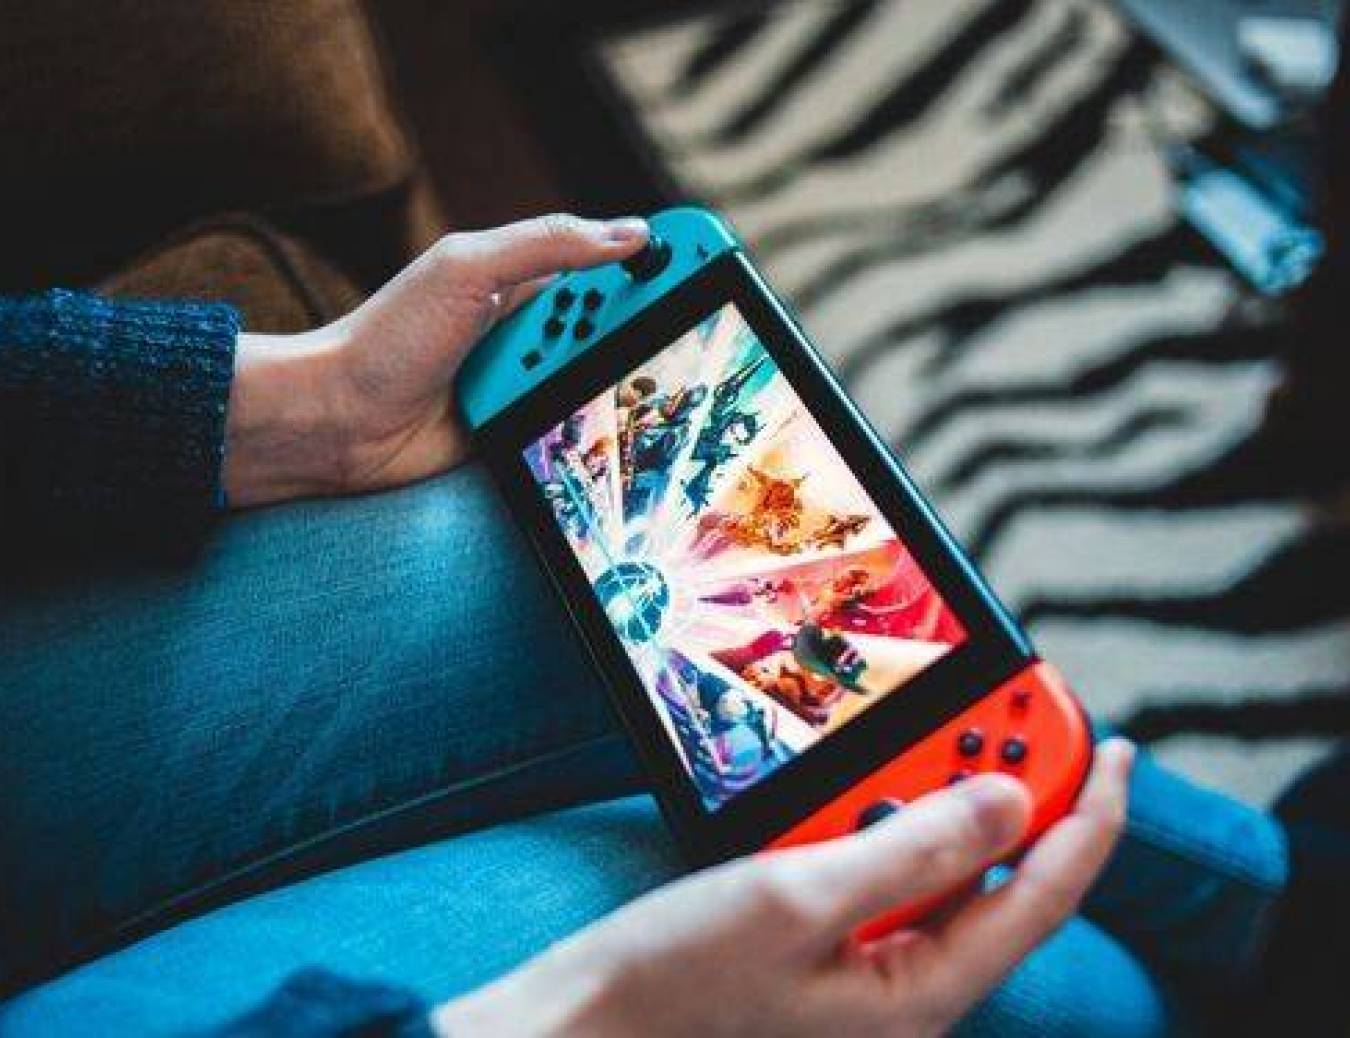 Nintendo Switch: Kilka rzeczy, które powinieneś wiedzieć o konsoli przed zakupem